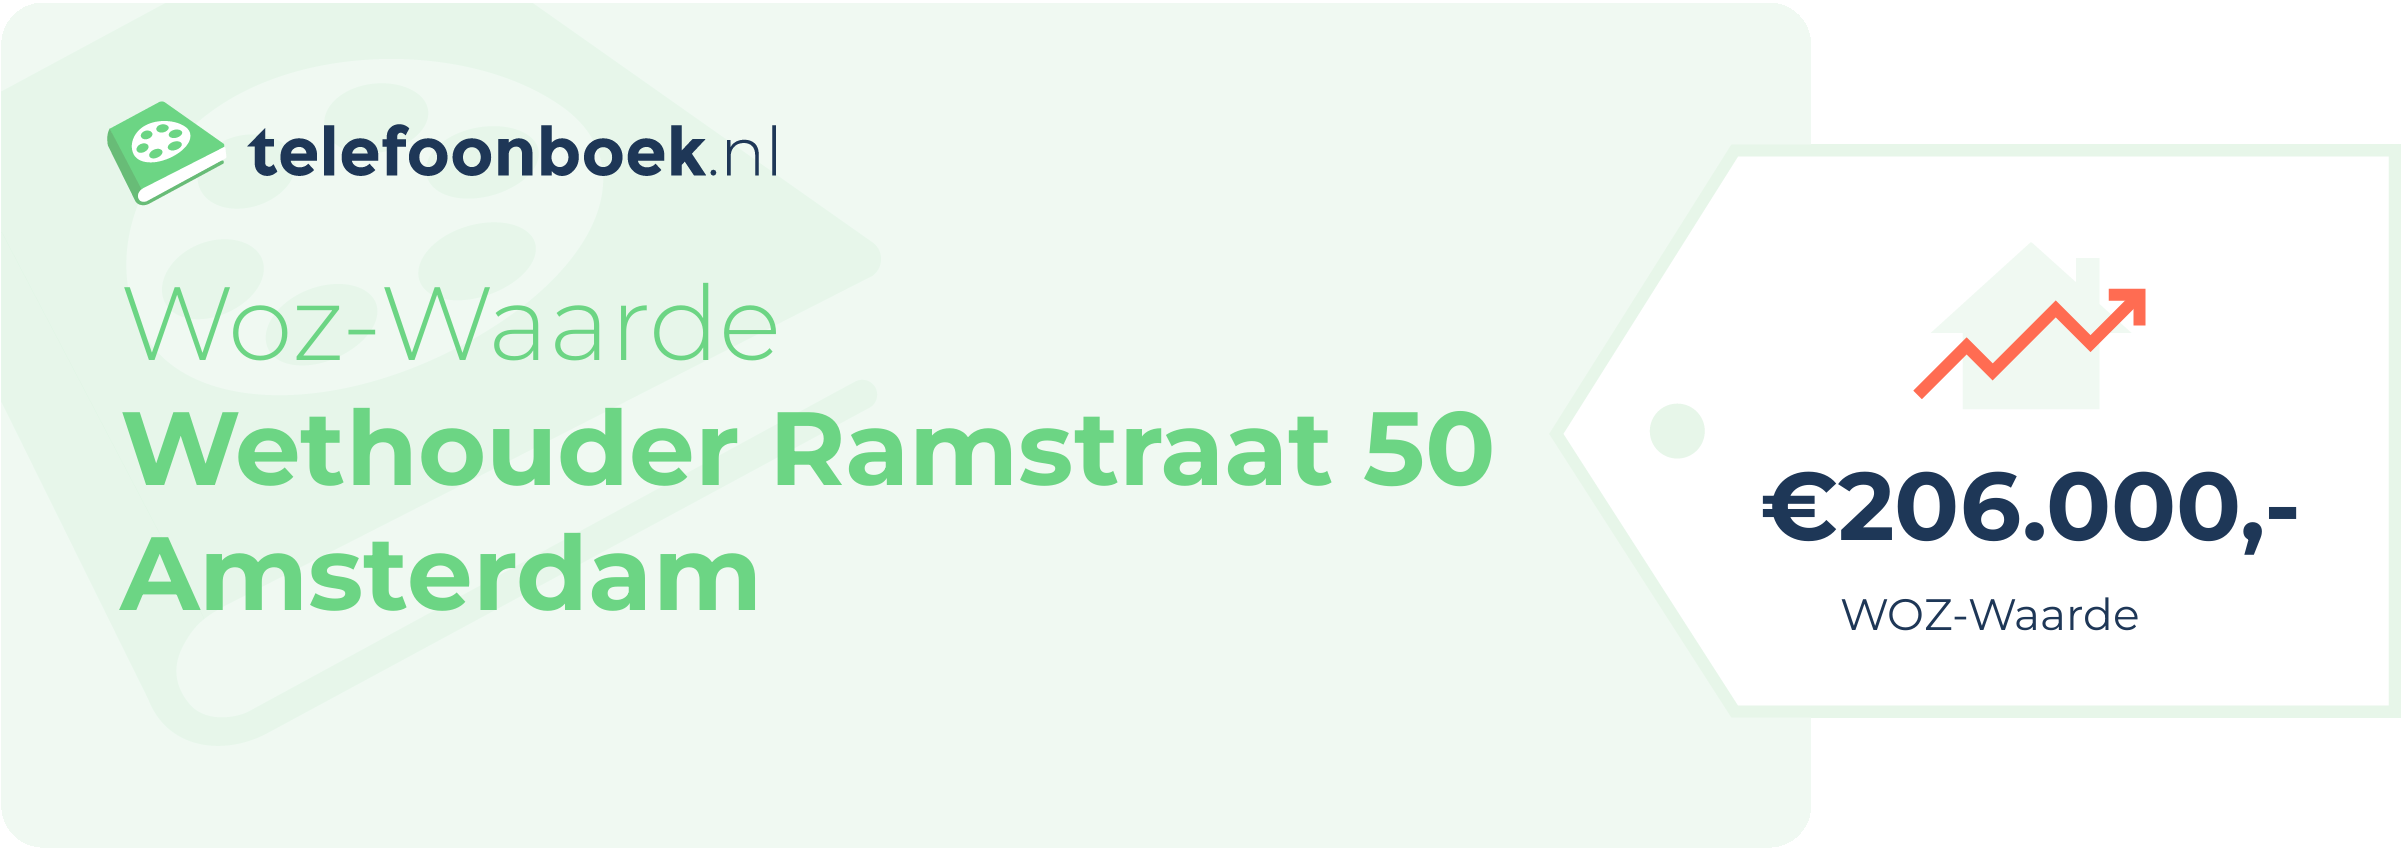 WOZ-waarde Wethouder Ramstraat 50 Amsterdam